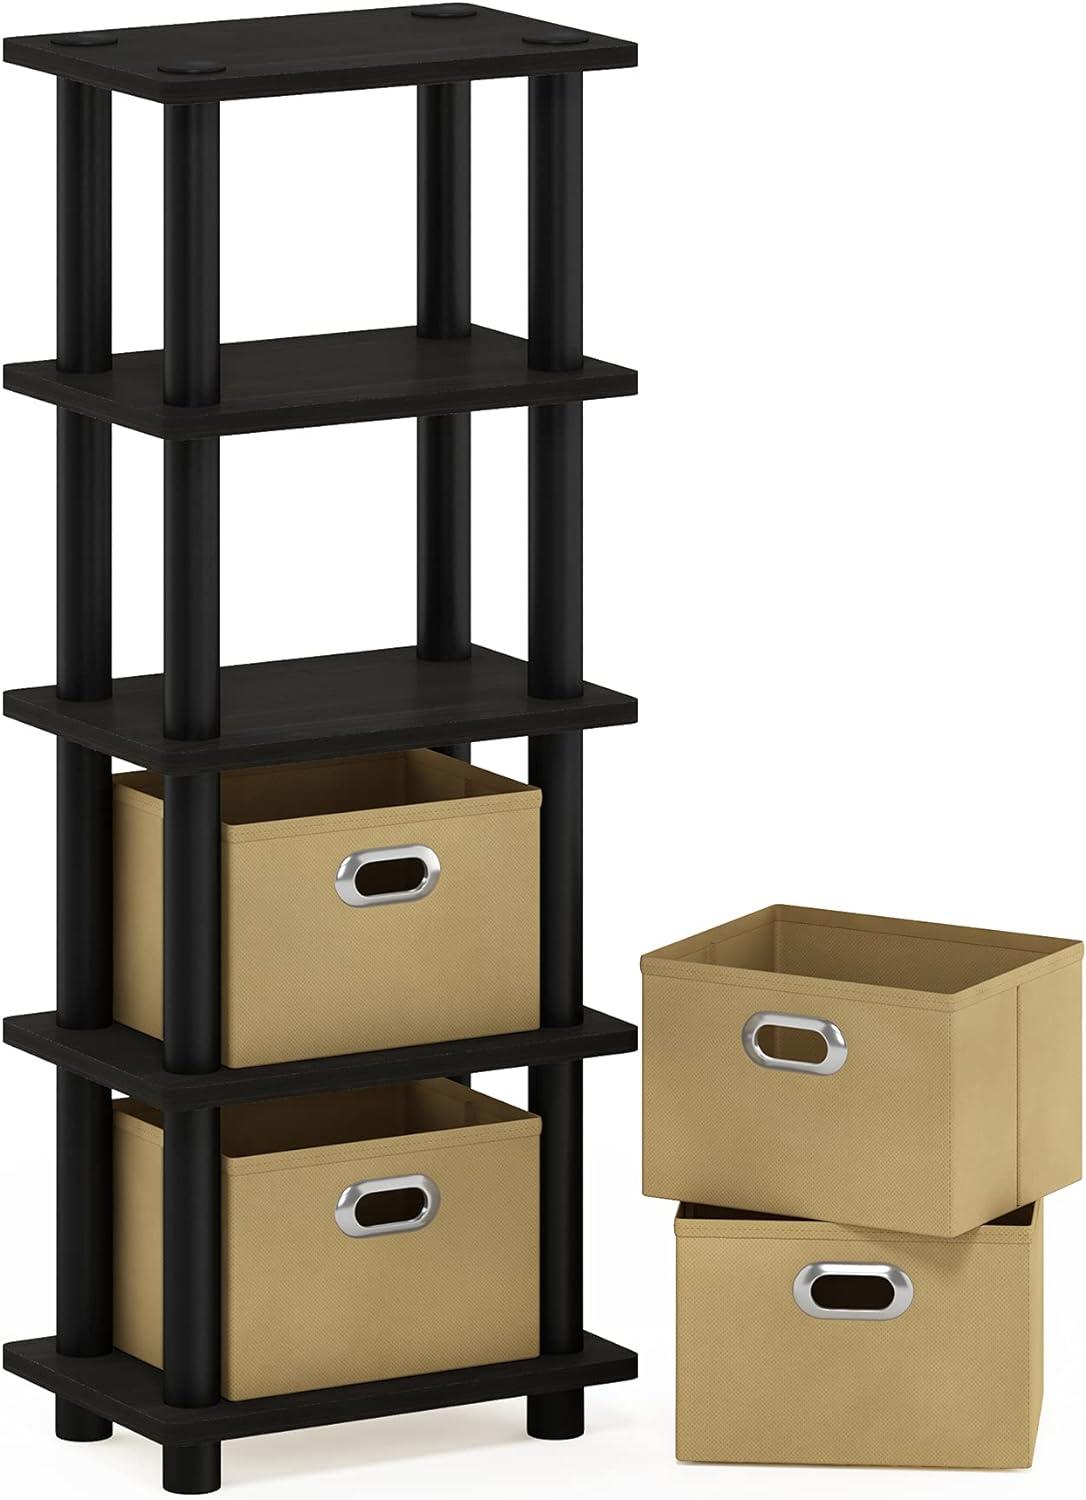 Espresso 4-Bin Wood Organizer Rack for Stylish Storage